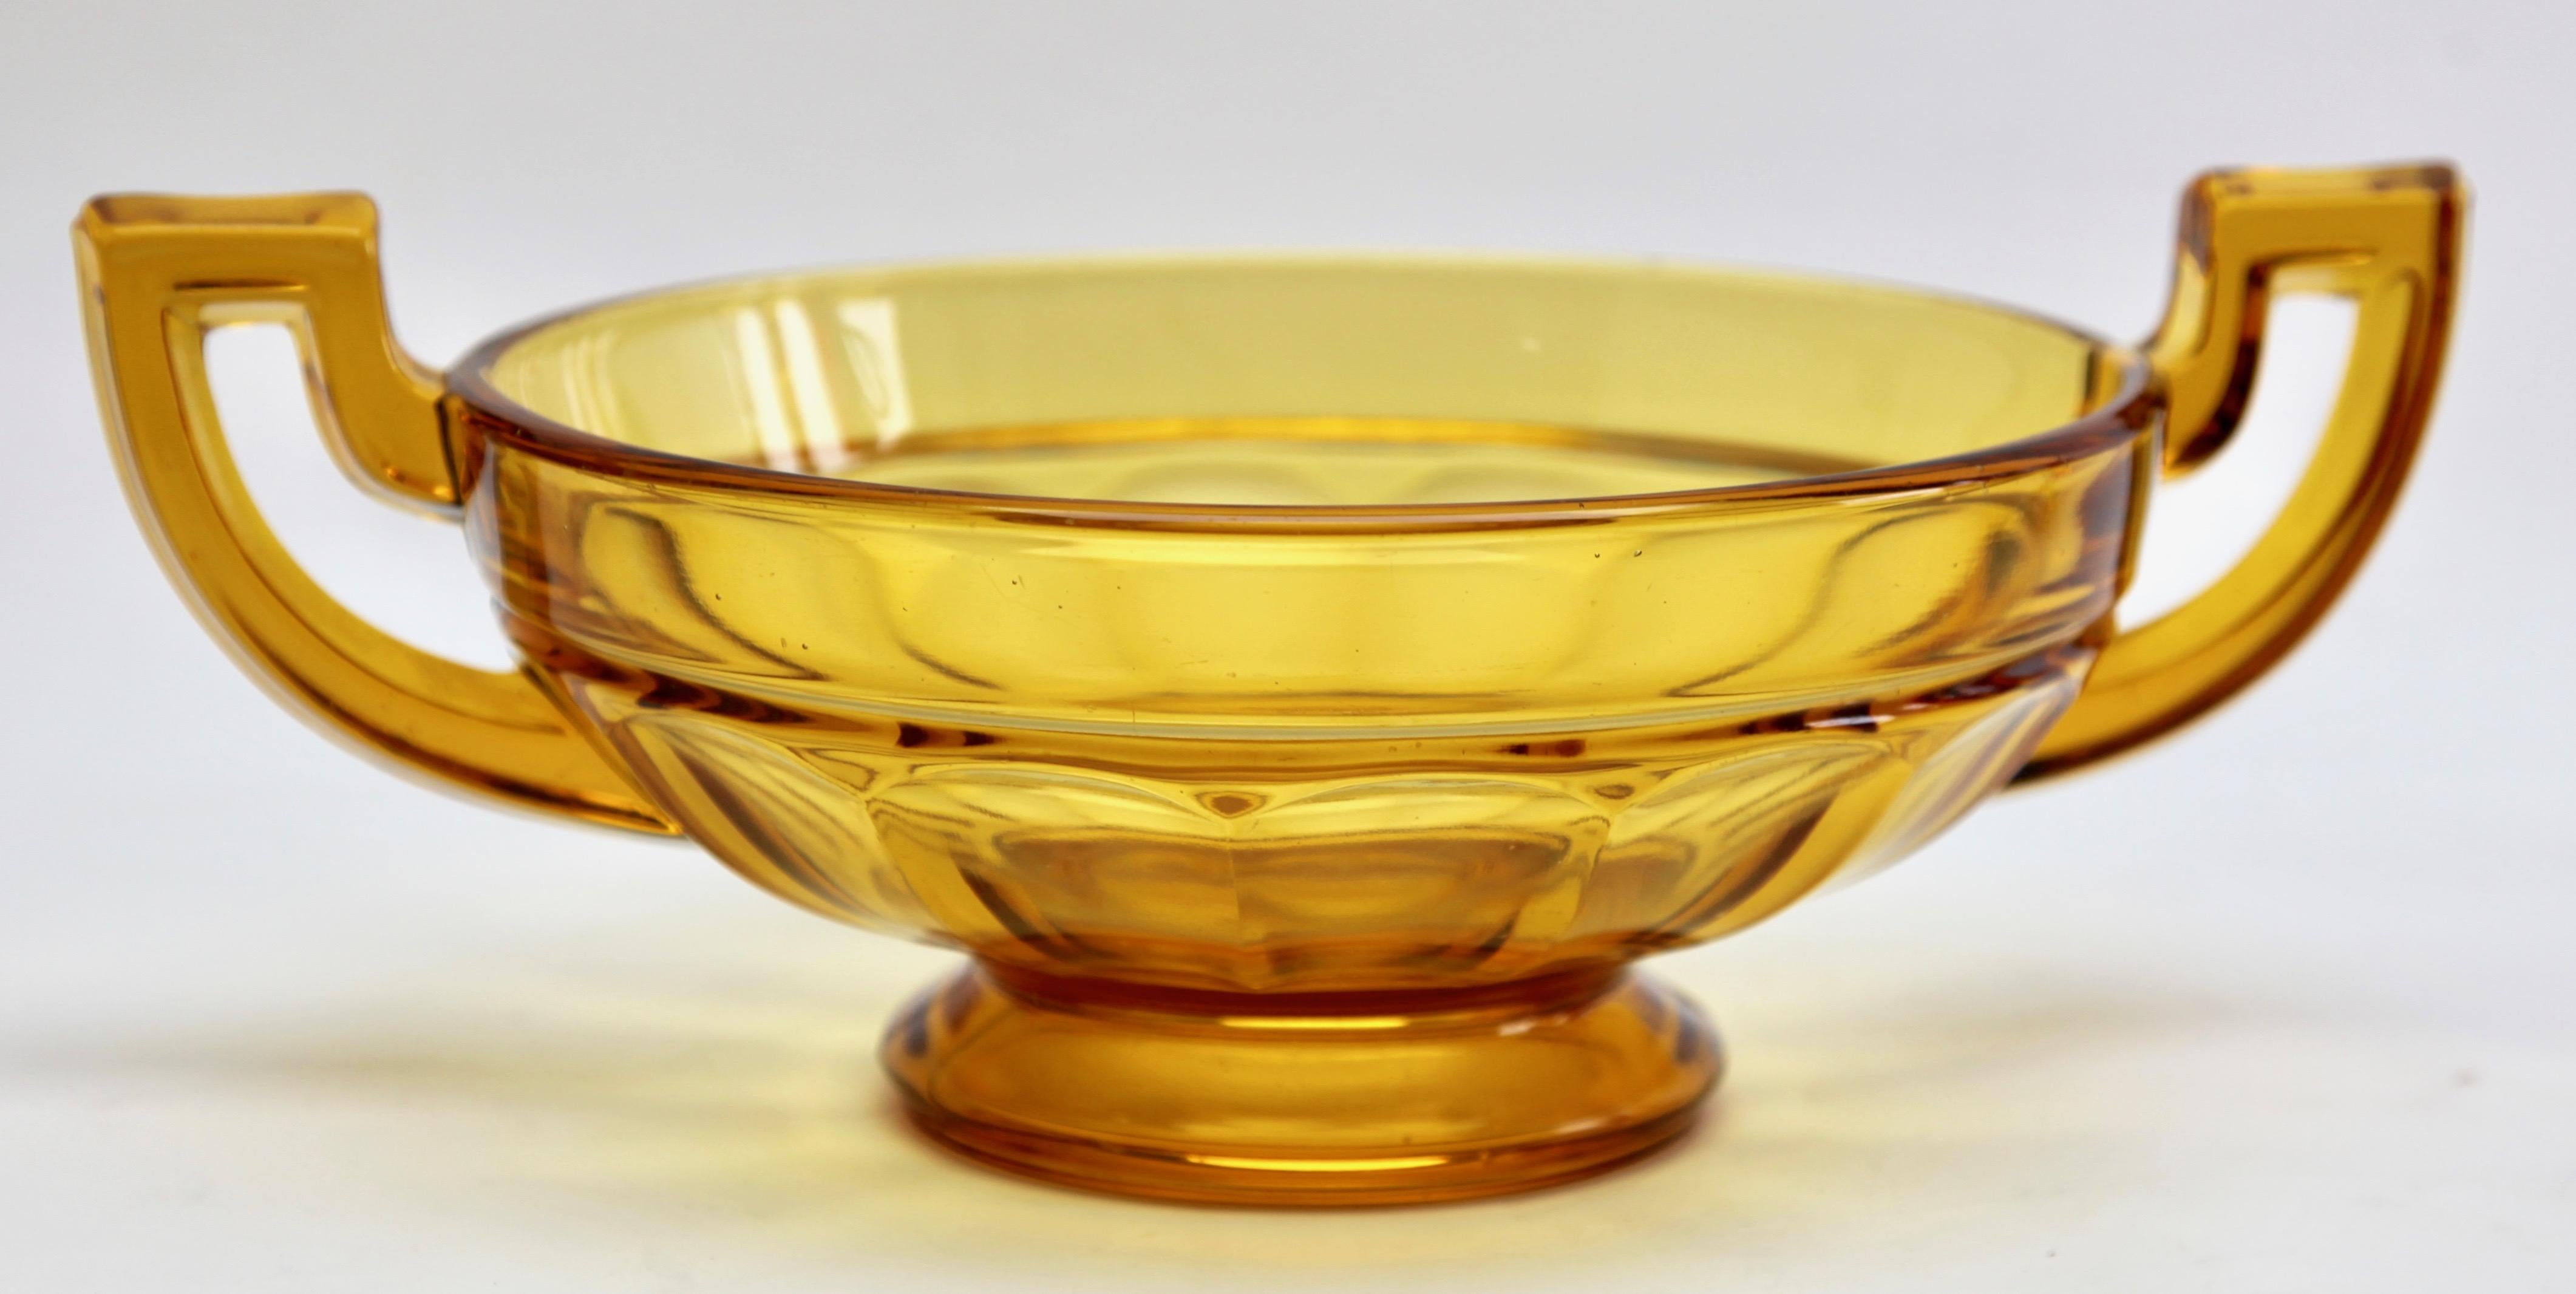 Die runde Version dieser Schale aus Braunglas, hergestellt von Val Saint Lambert für die Luxval-Serie. Die Vase ist auf der Innenseite mit 